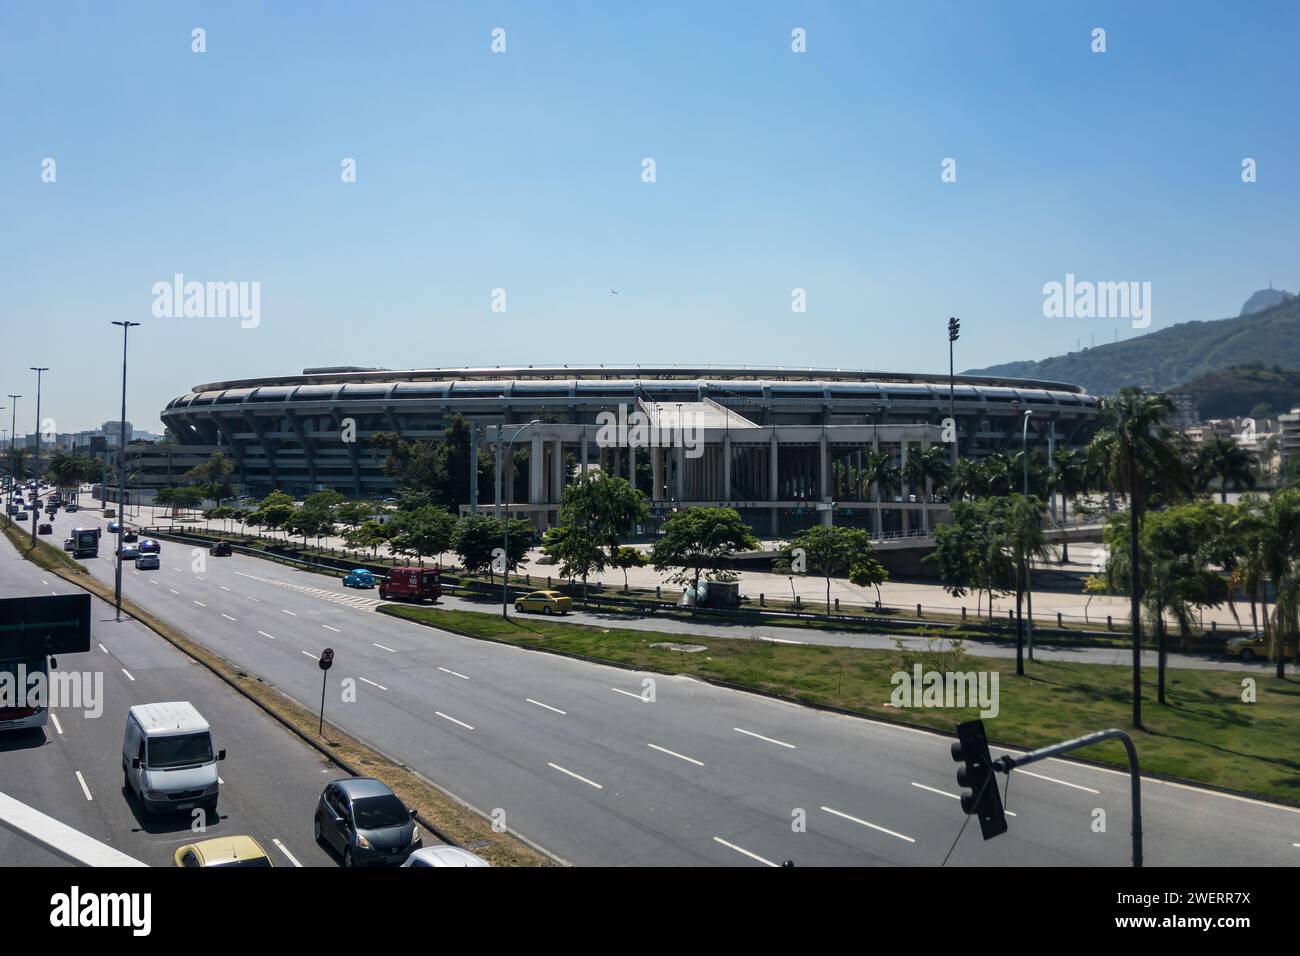 Fernsicht auf das Maracana-Stadion, wie von der Fußgängerbrücke des Bahnhofs Maracana über die Rei Pele Avenue unter dem sonnigen, klaren blauen Himmel am Sommermorgen gesehen. Stockfoto